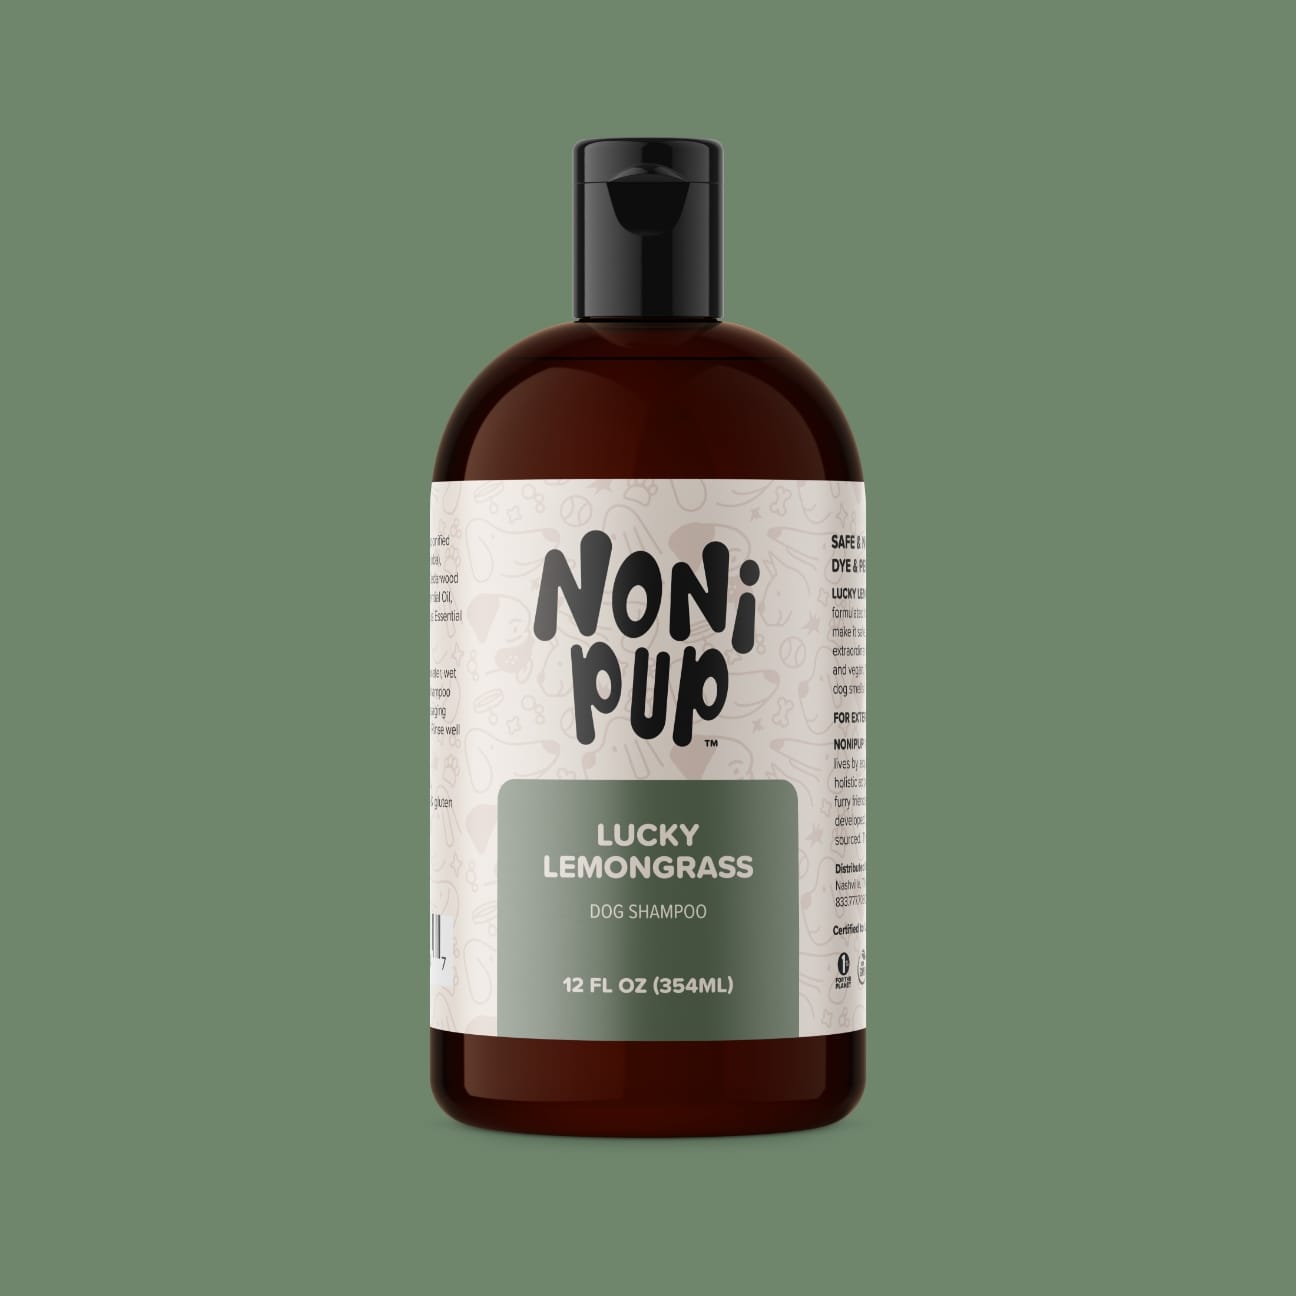 Nonipup Lucky Lemongrass Dog Shampoo